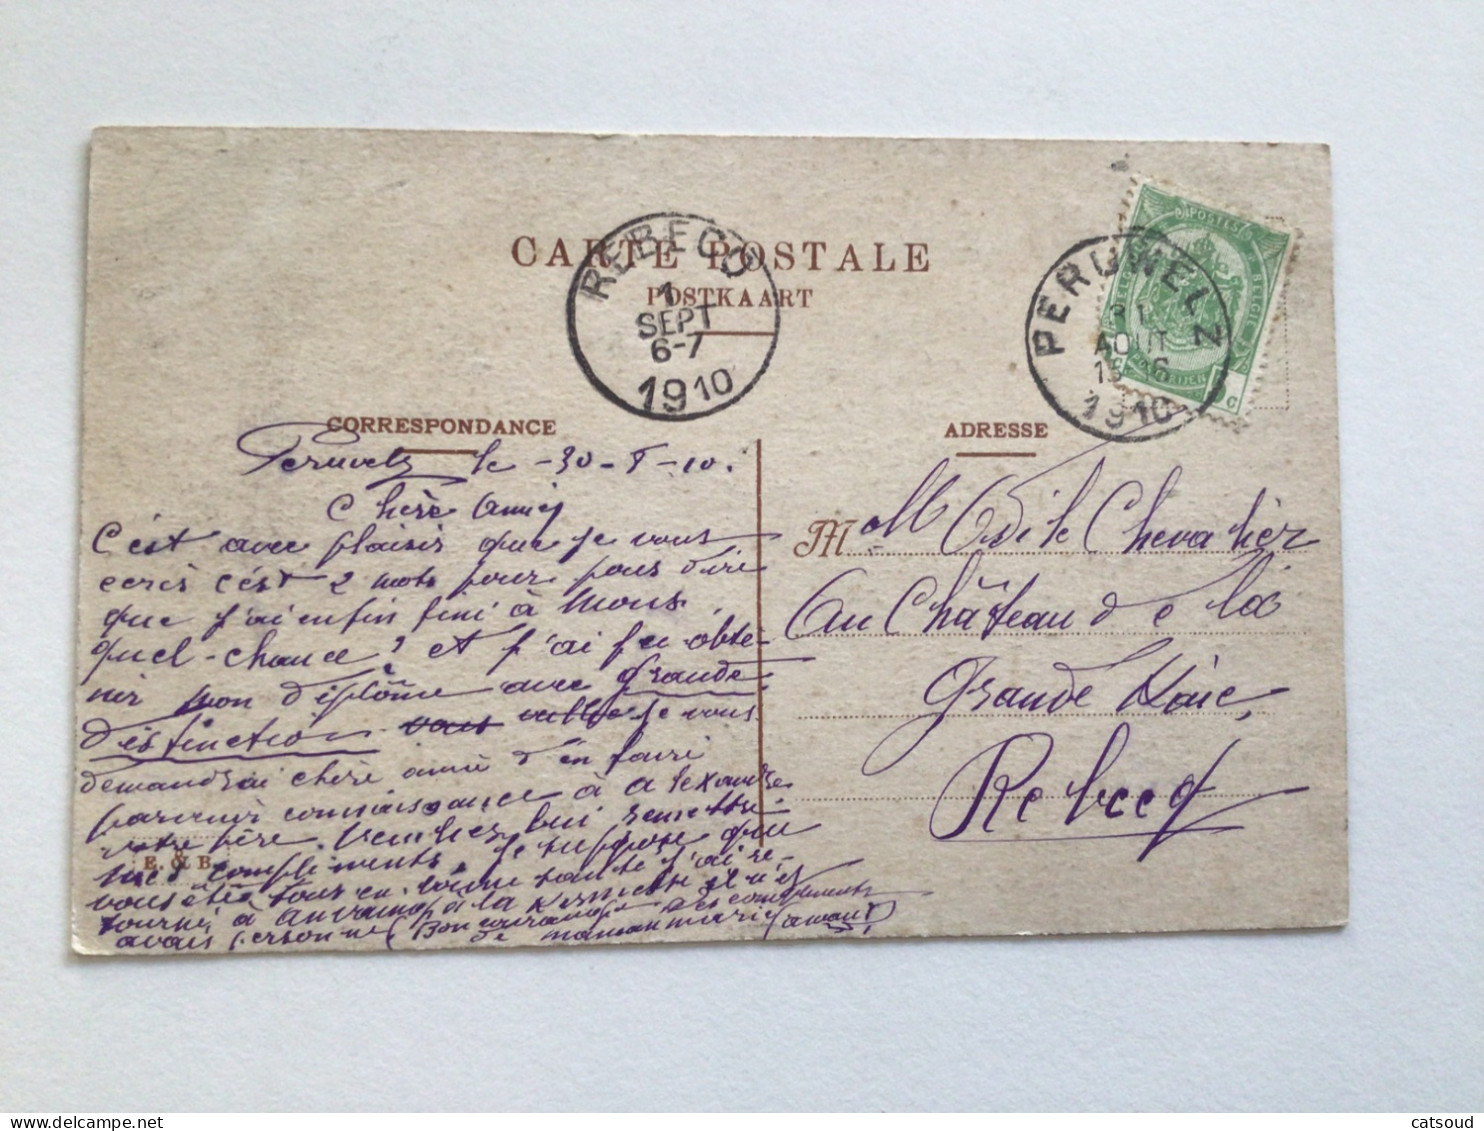 Carte Postale Ancienne (1910) Péruwelz Château Dapsens, Vue Des Jardins - Péruwelz